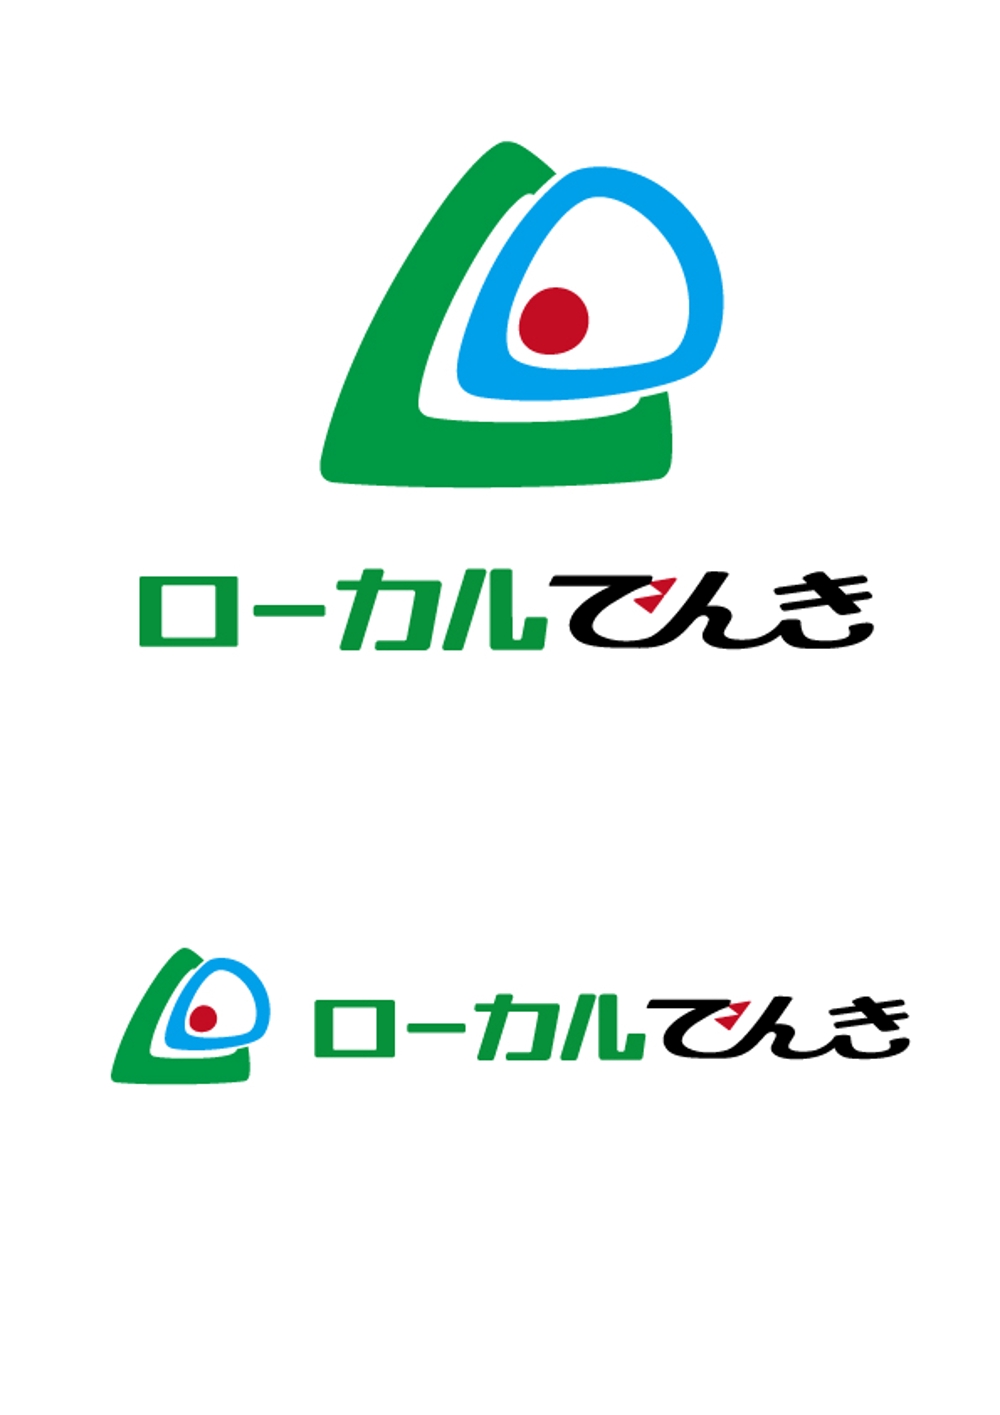 ローカル電気ロゴ_C案002.jpg